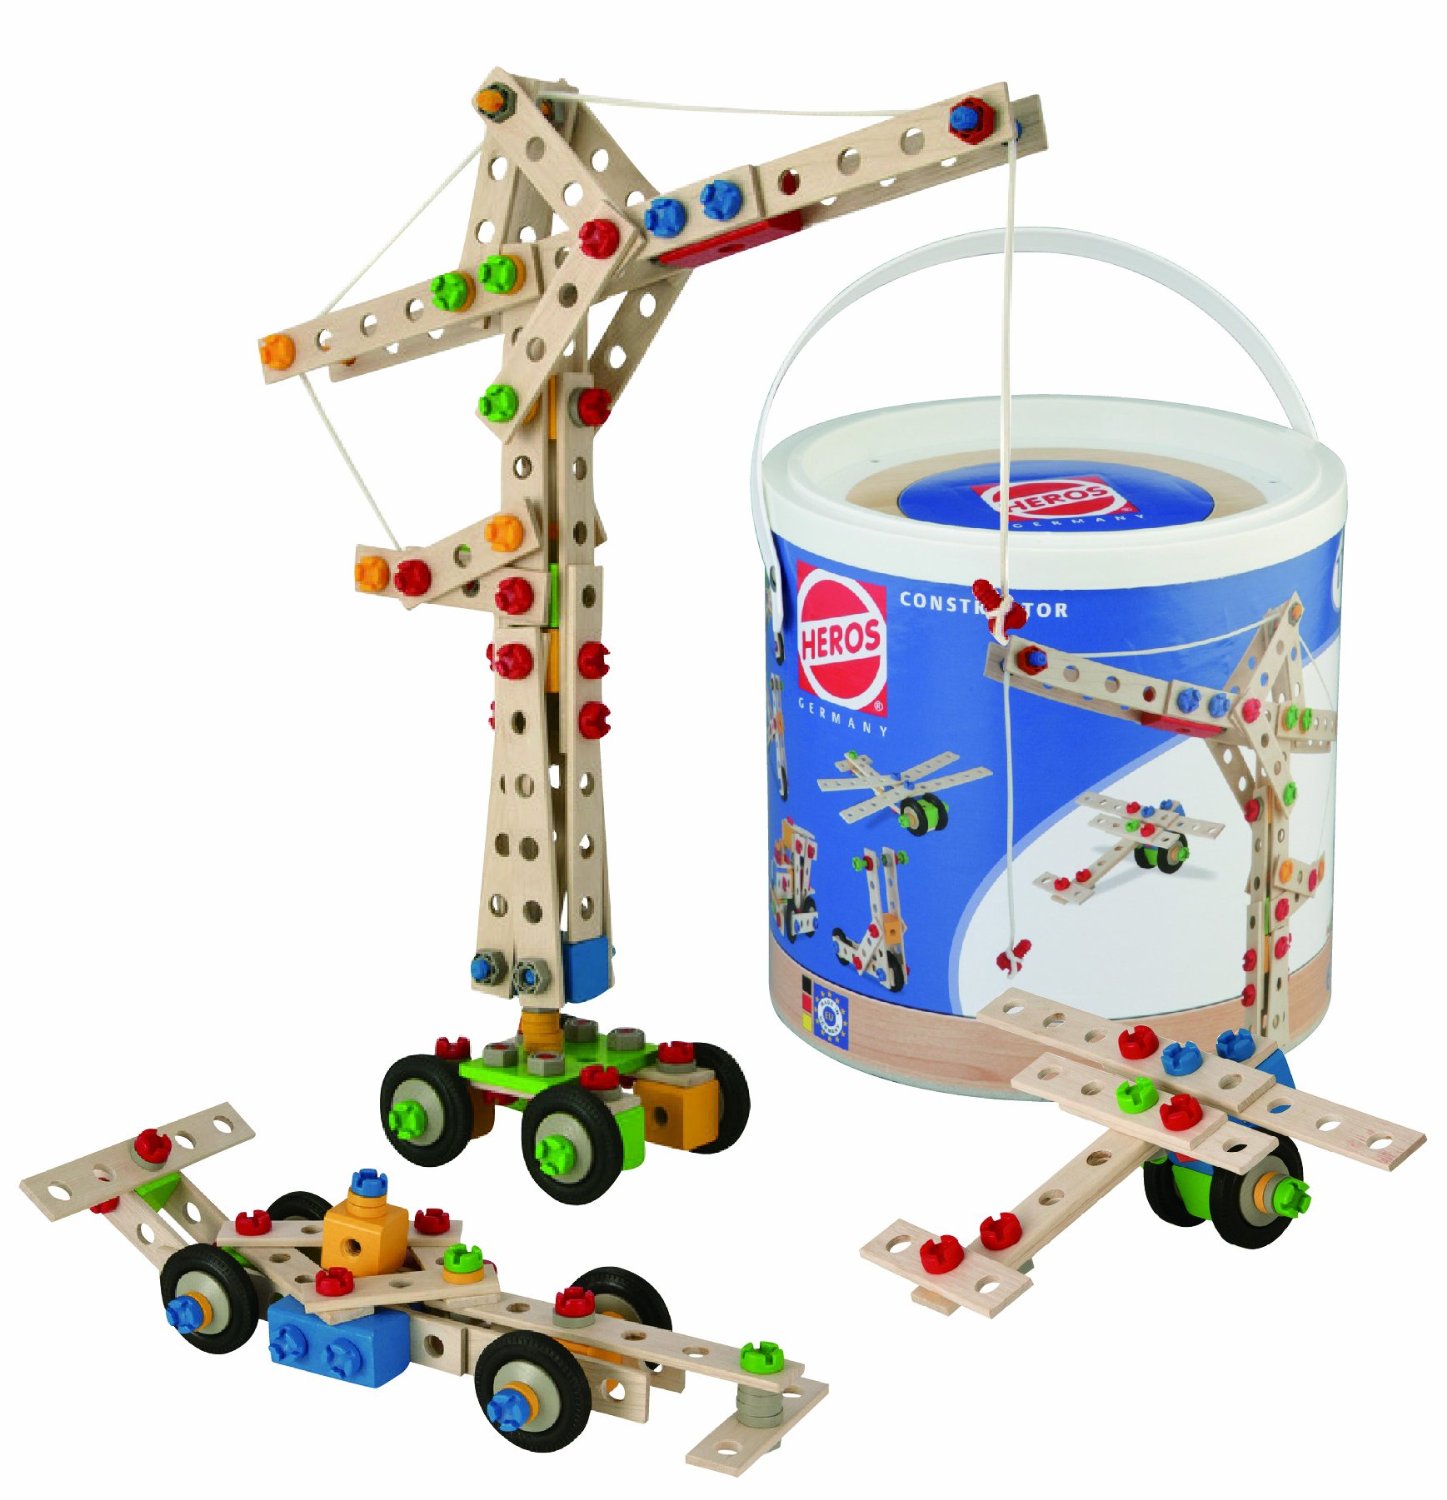 Konstruktion Baukasten Flamingo Modell Spielzeug Spielzeug Baukästen Baukasten 